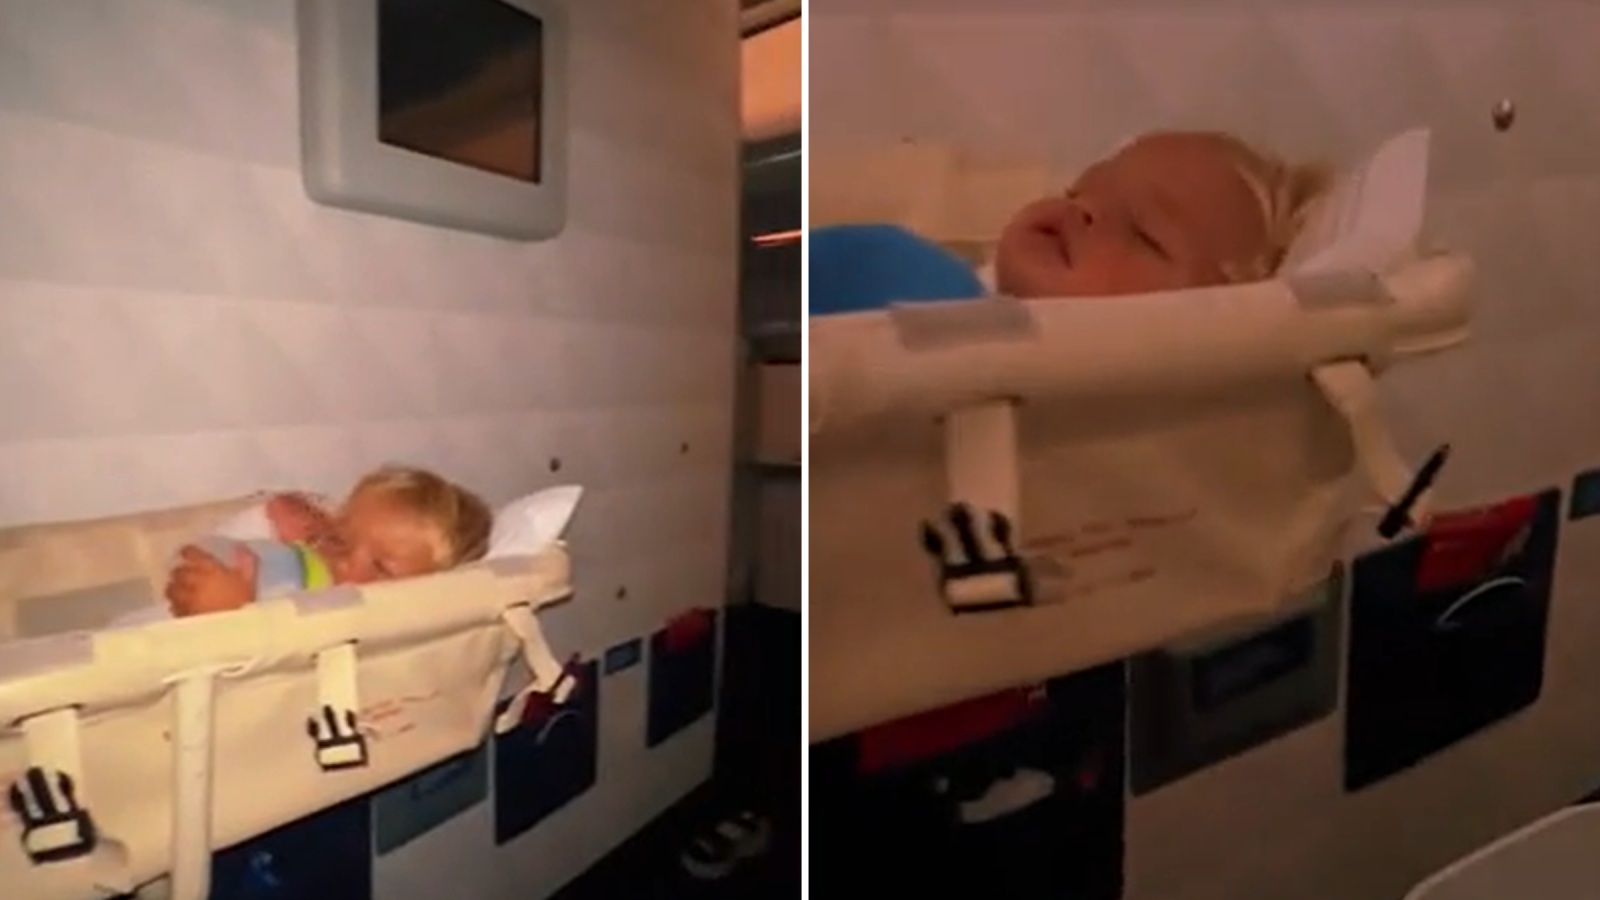 Donau gårdsplads Alt det bedste Mom Reveals How to Get Your Toddler 'The Best Seat' on Plane for Free